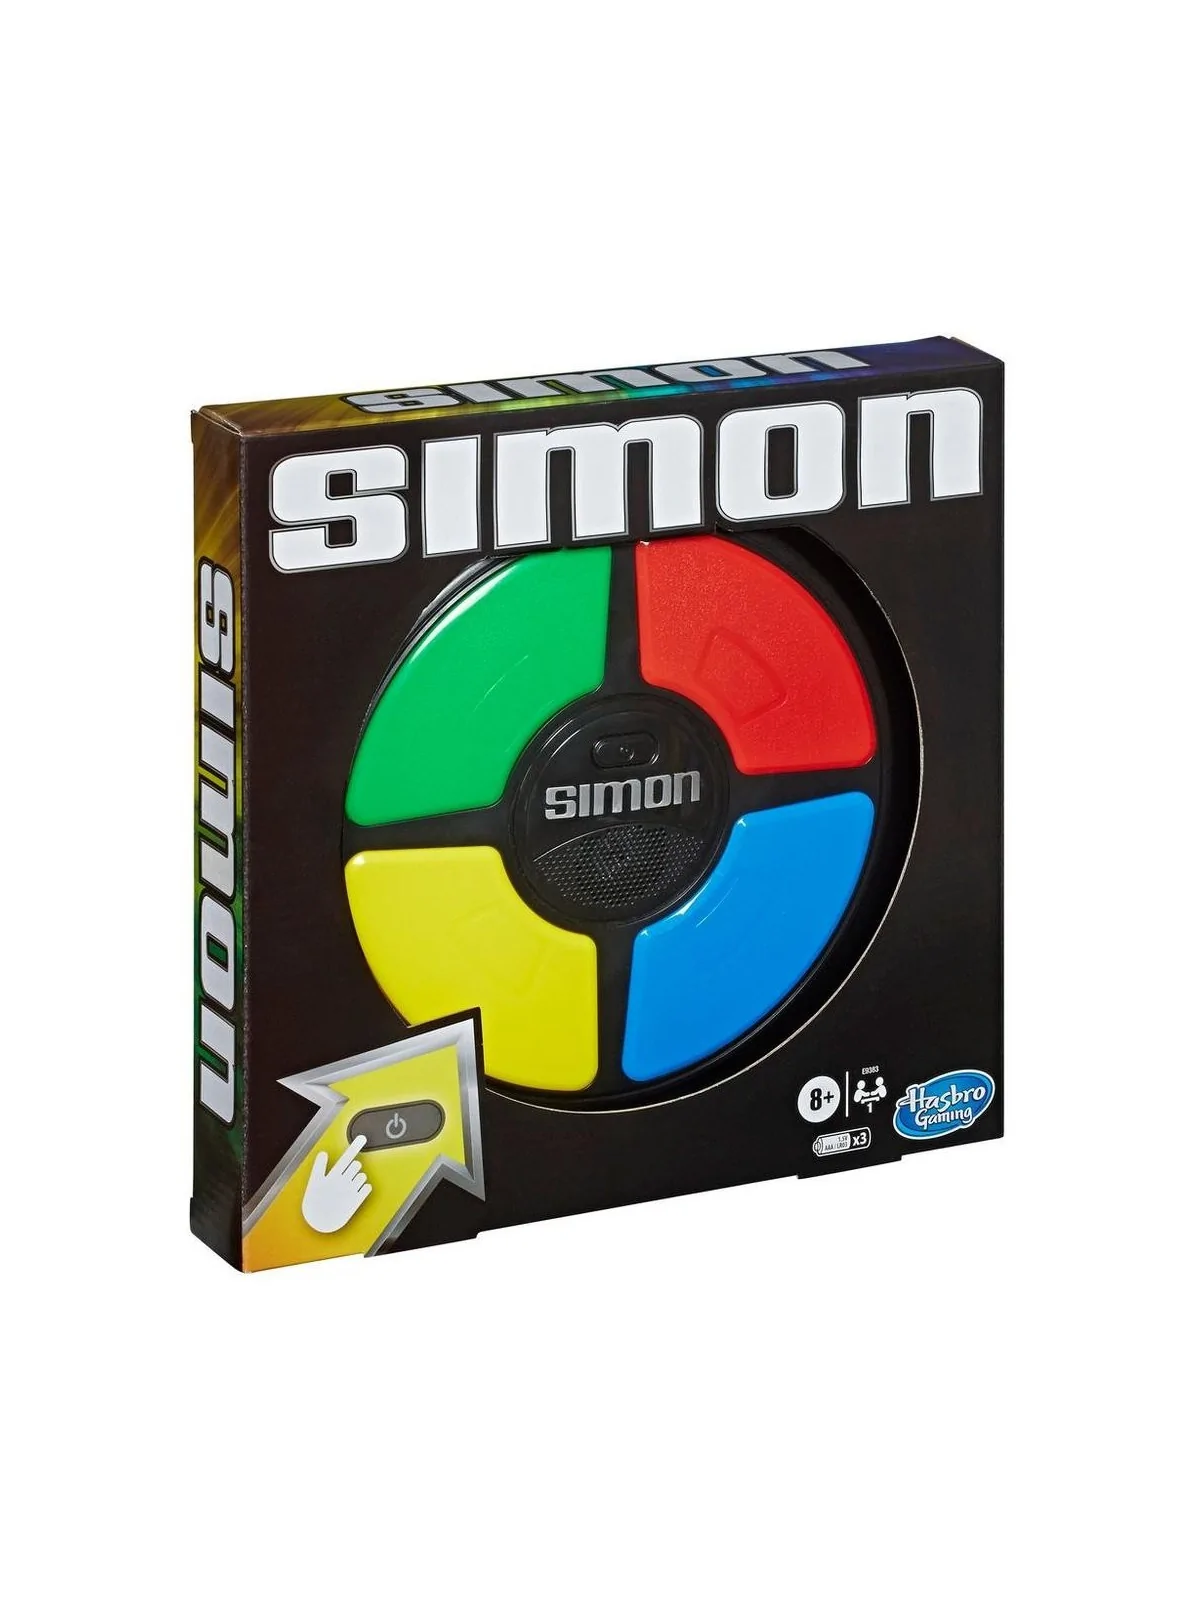 Comprar Simon barato al mejor precio 25,49 € de Hasbro